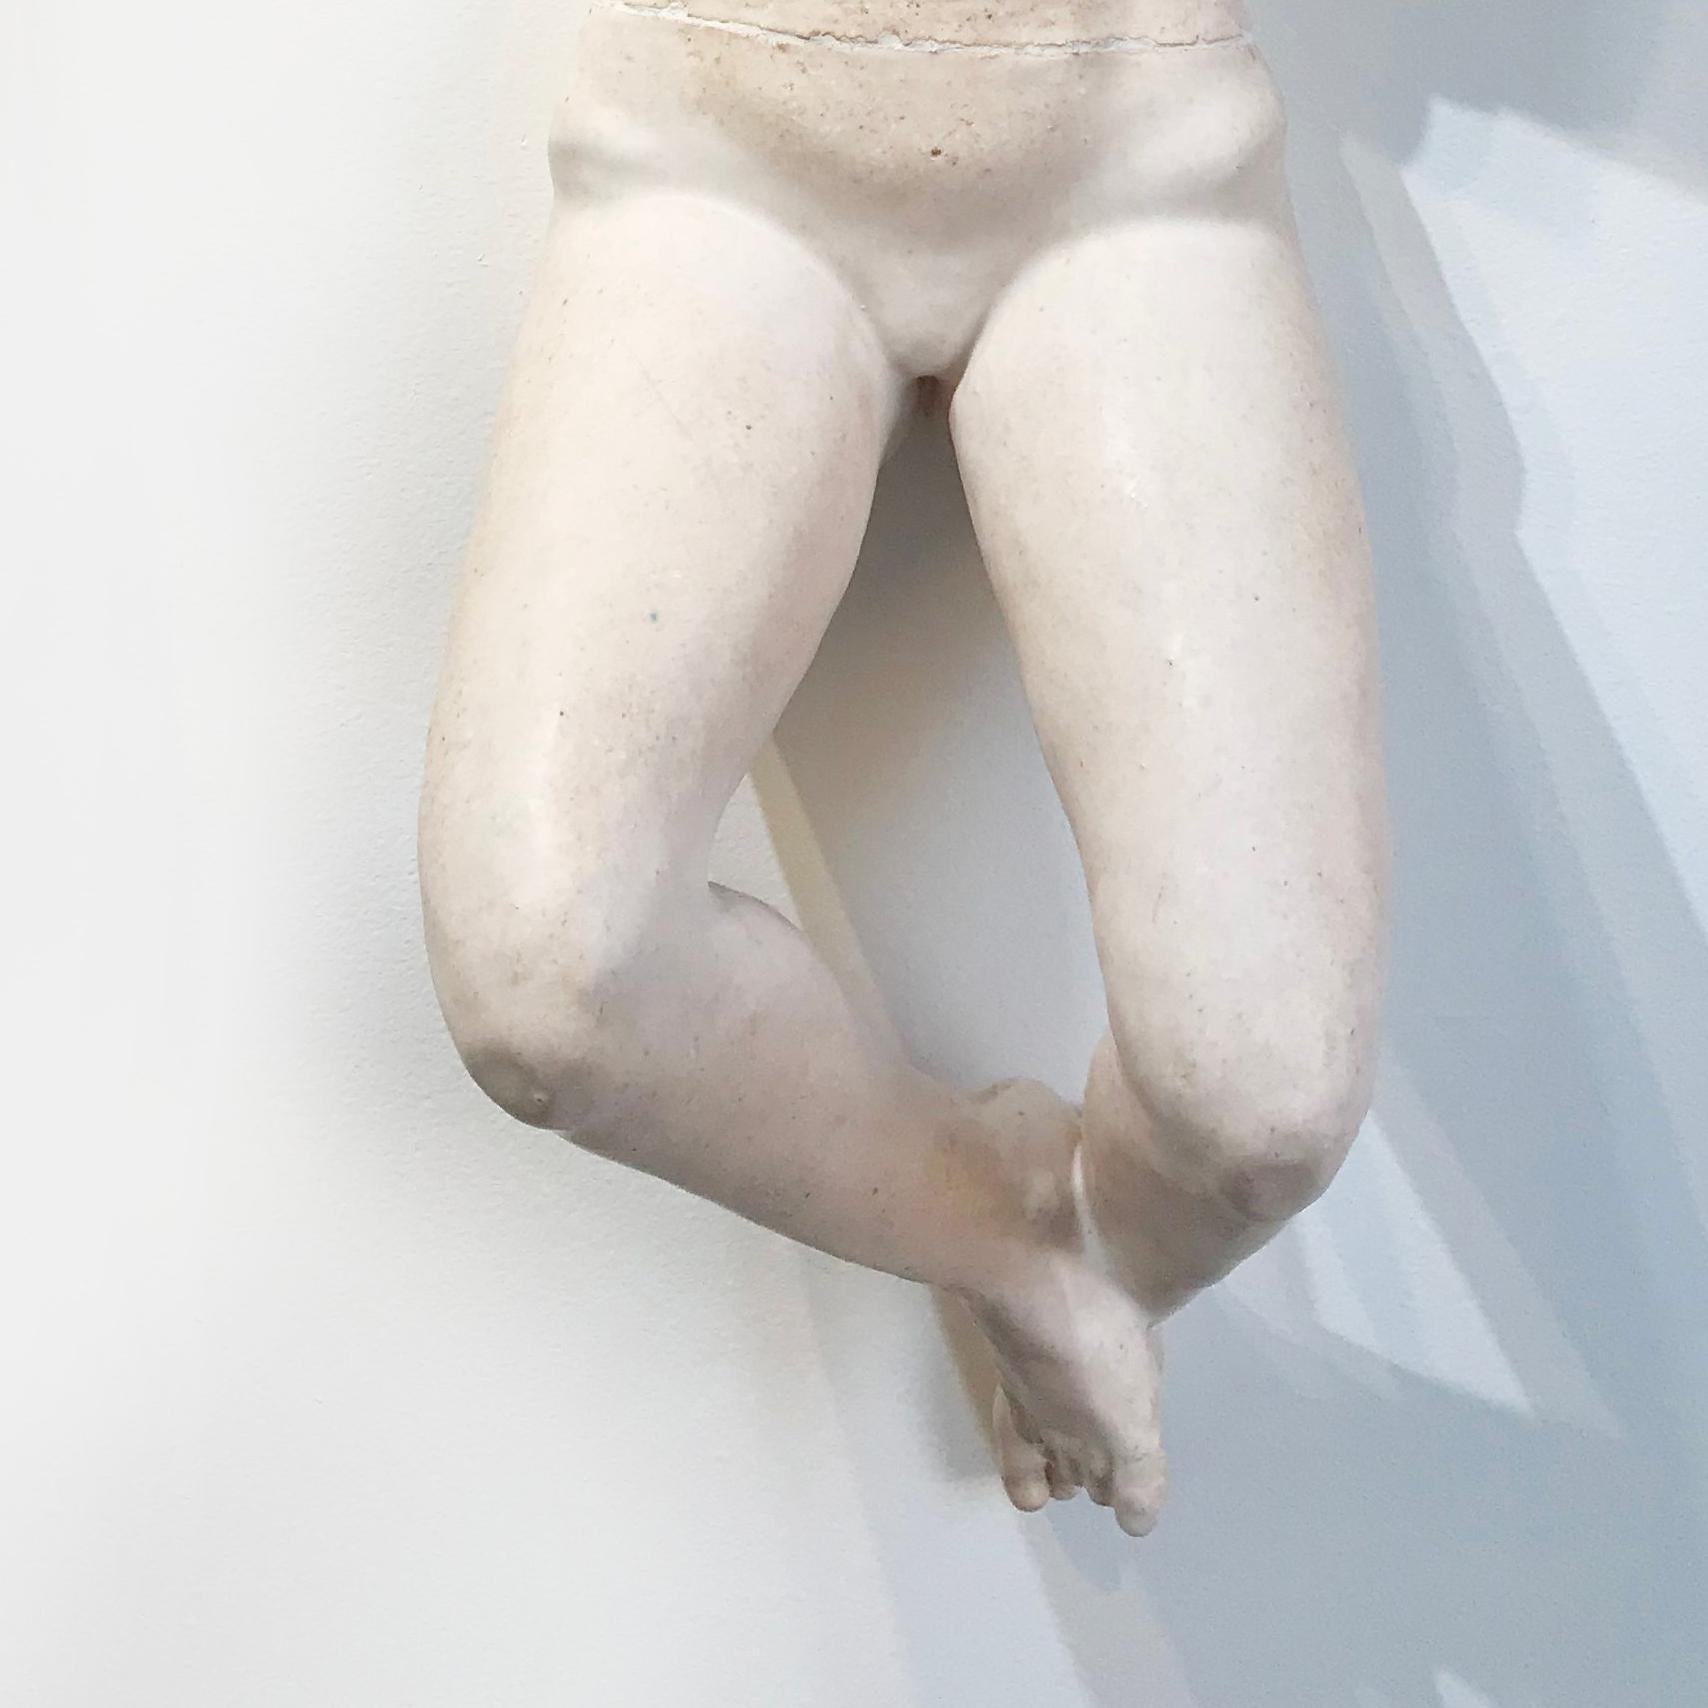 MUJER DORMIDA XI - Contemporary Sculpture by Mauricio Cortés